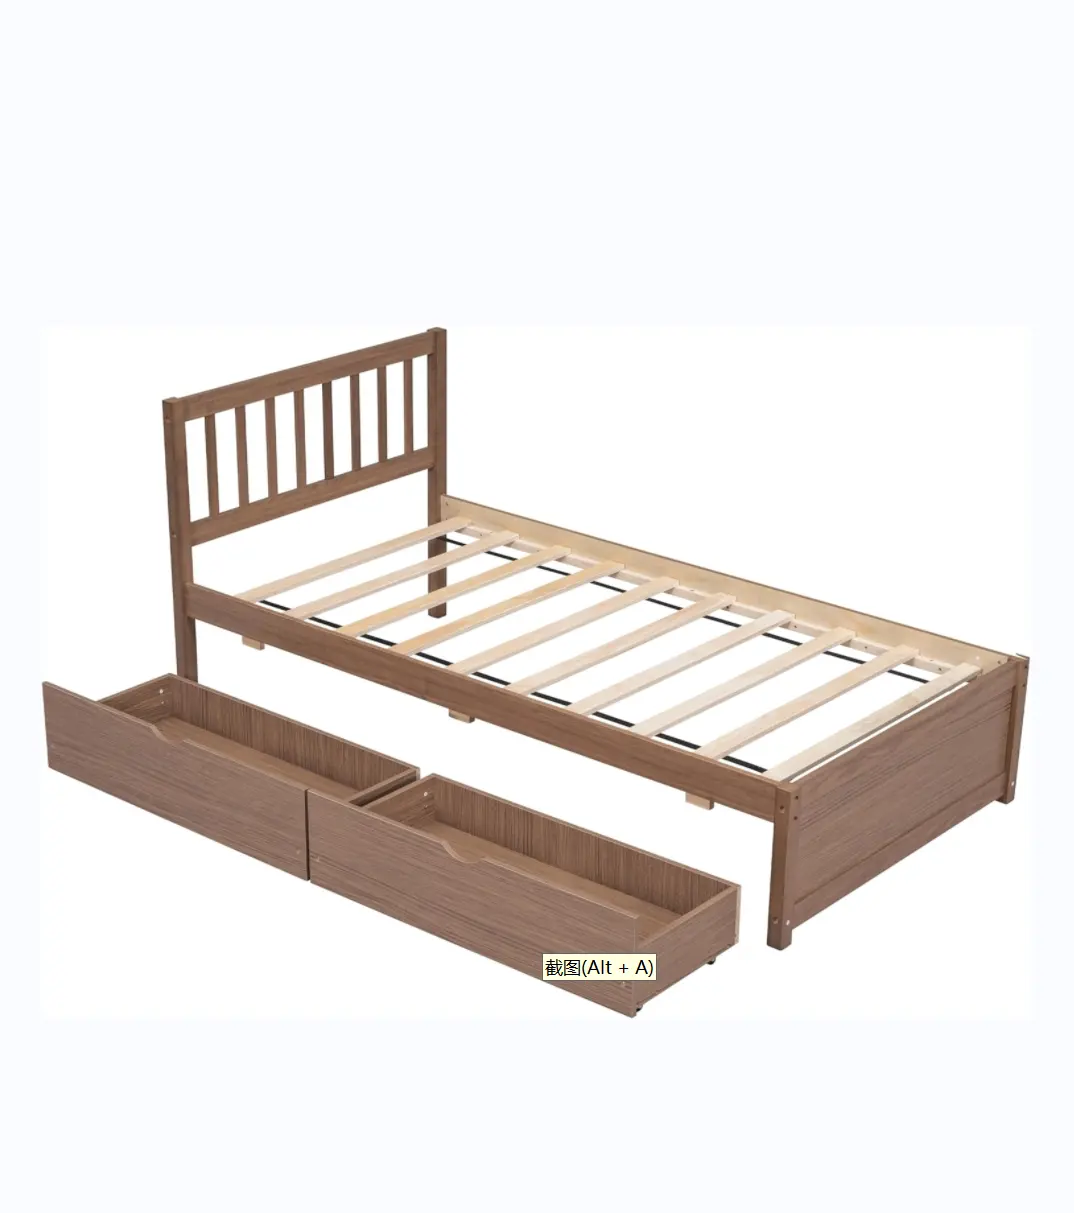 Çift karyola iskeleti, depolama çekmeceli ahşap ikiz yatak, başlık ile çocuk çift platform yatağı